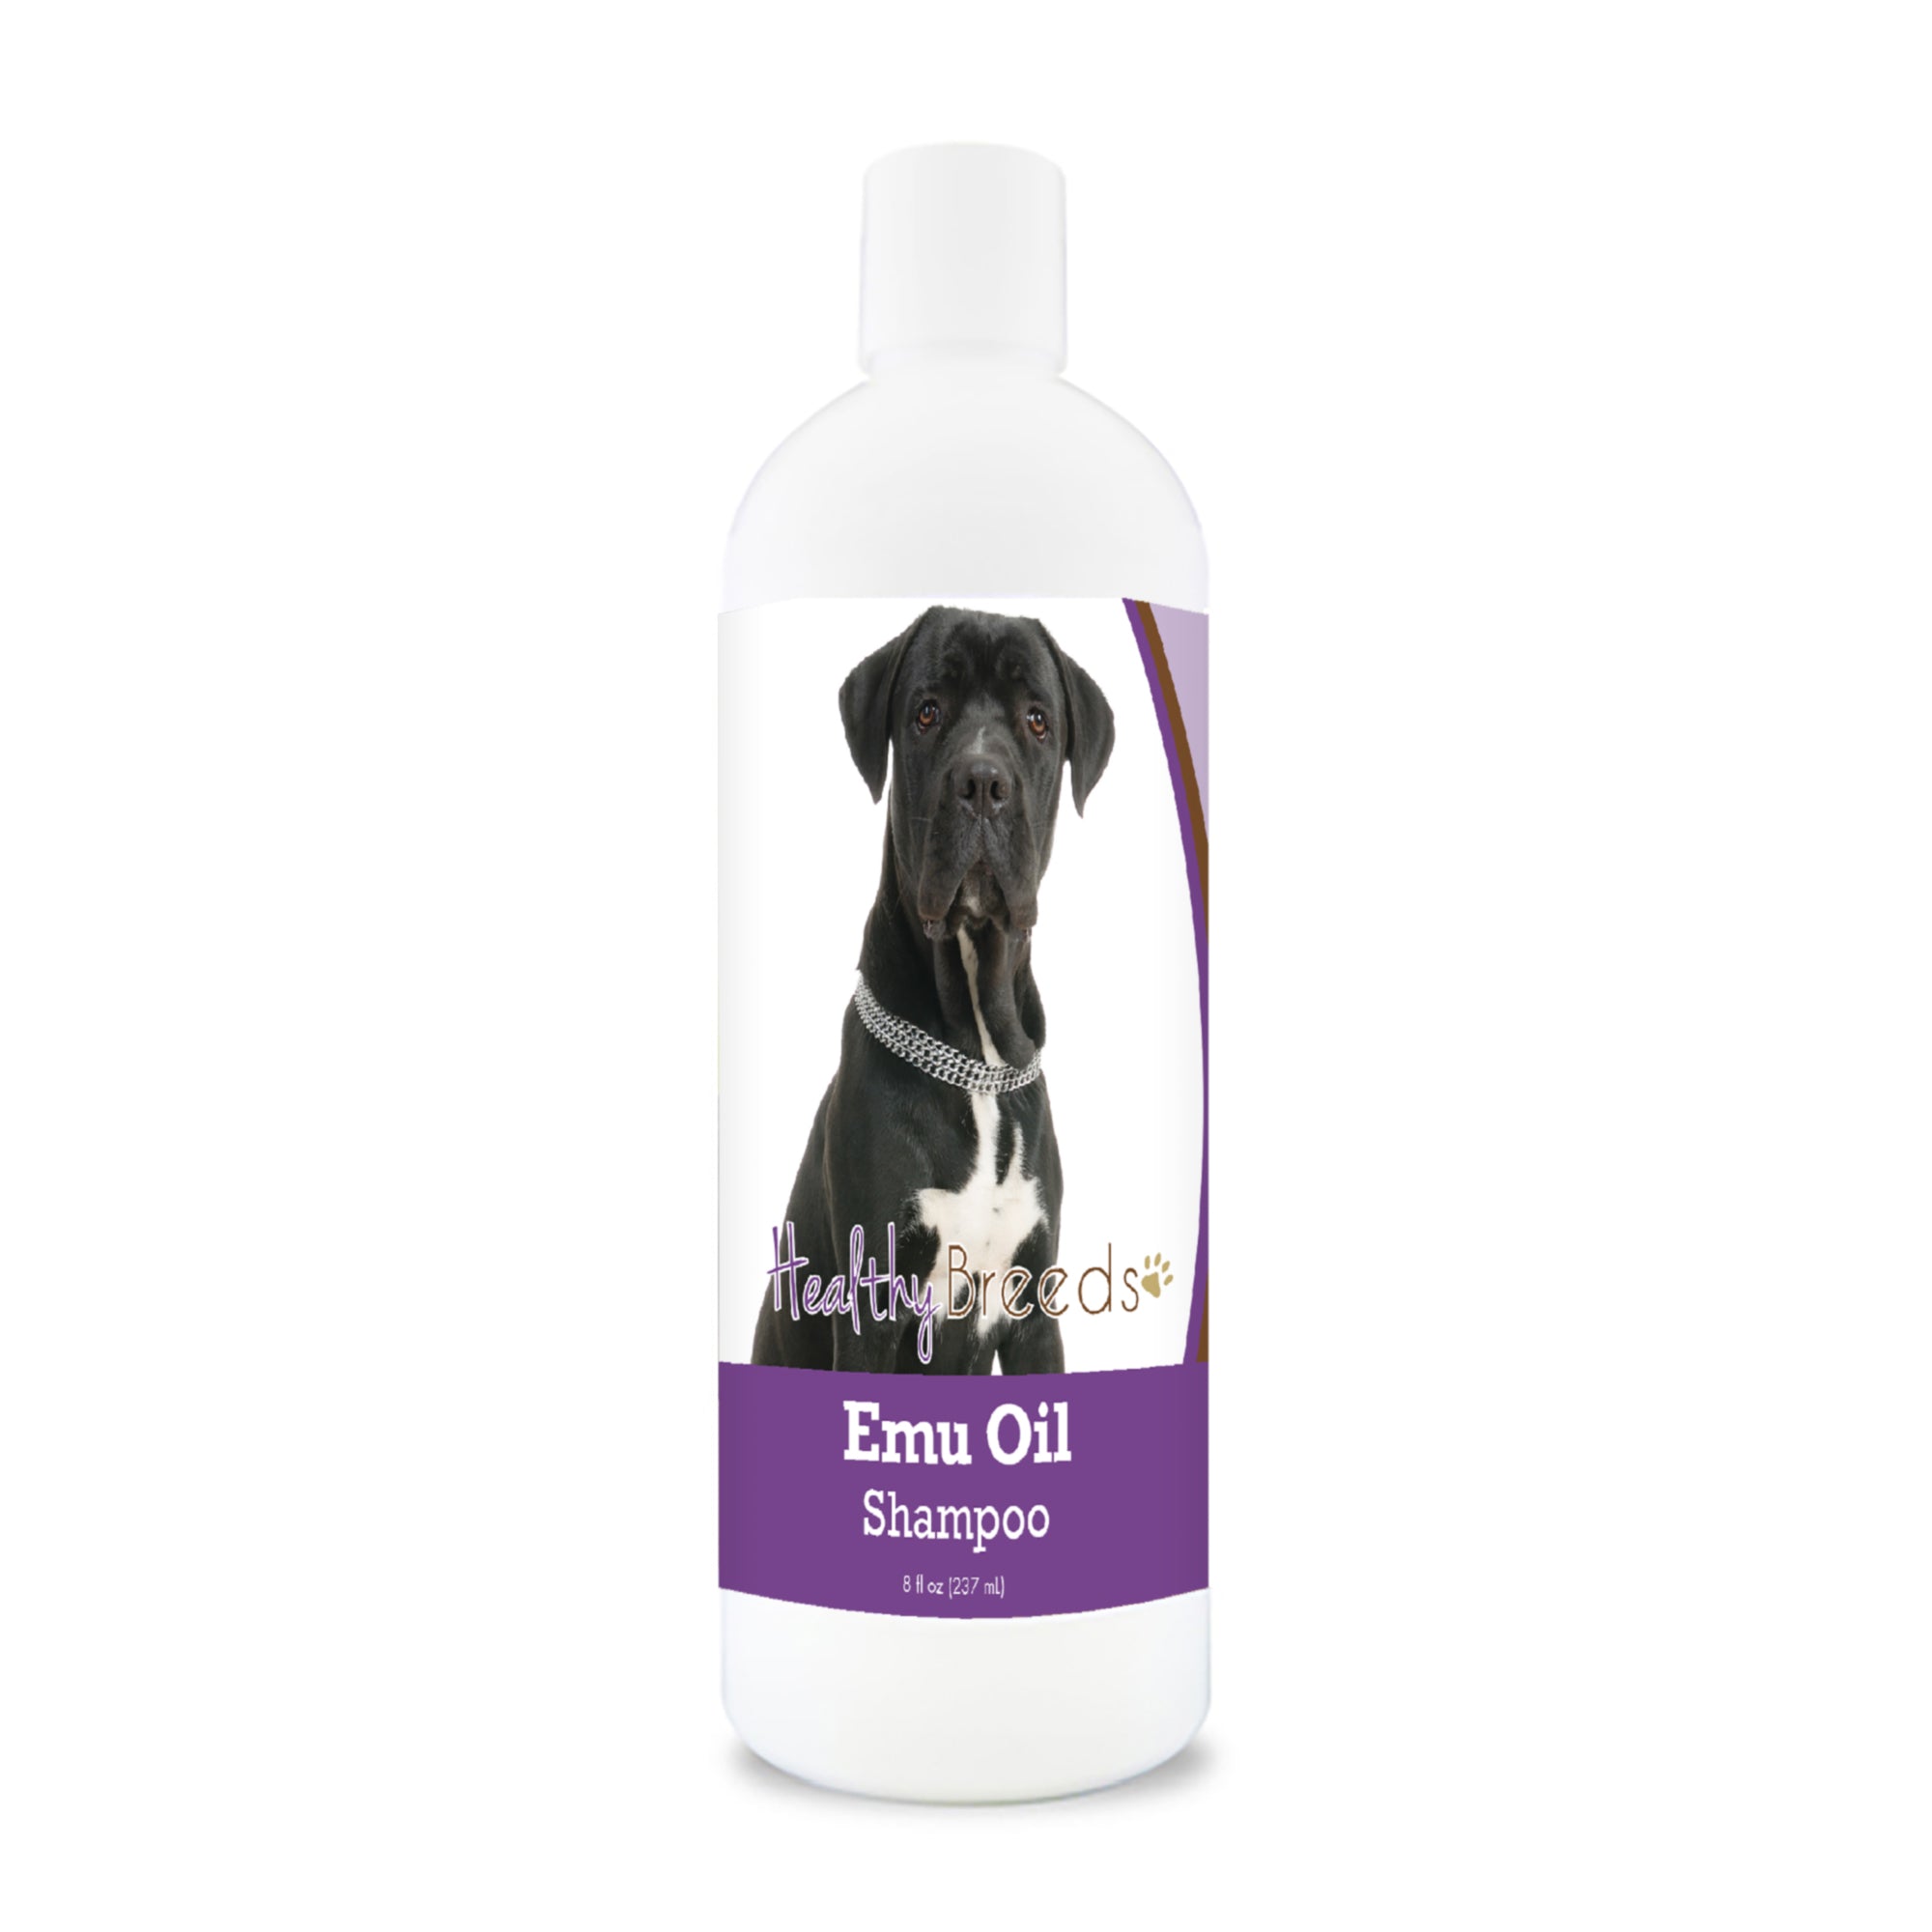 Cane Corso Emu Oil Shampoo 8 oz